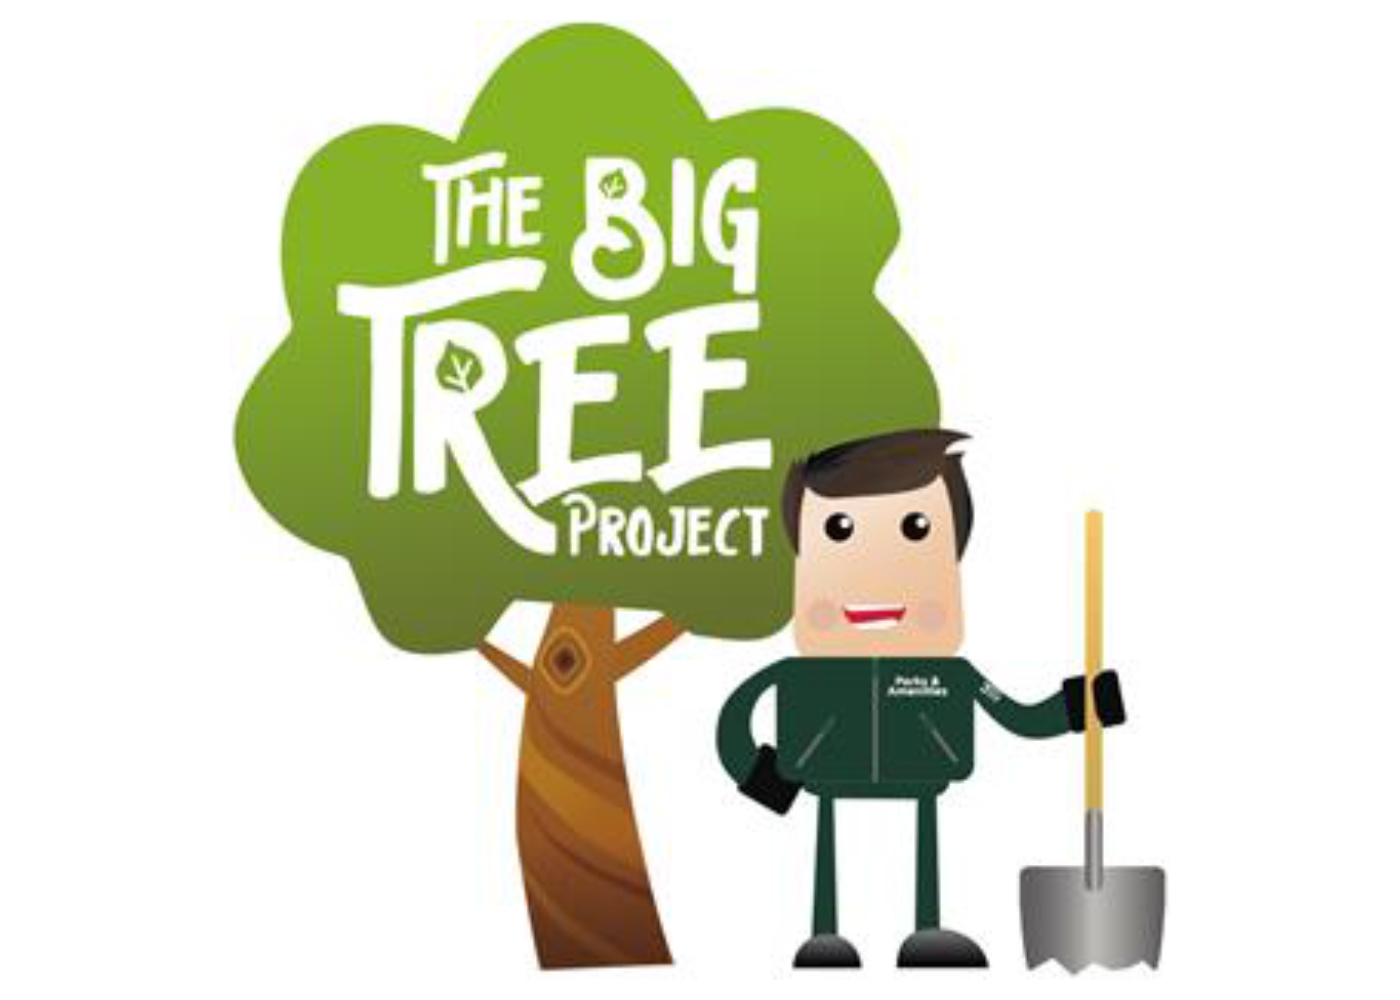 Big Tree Project